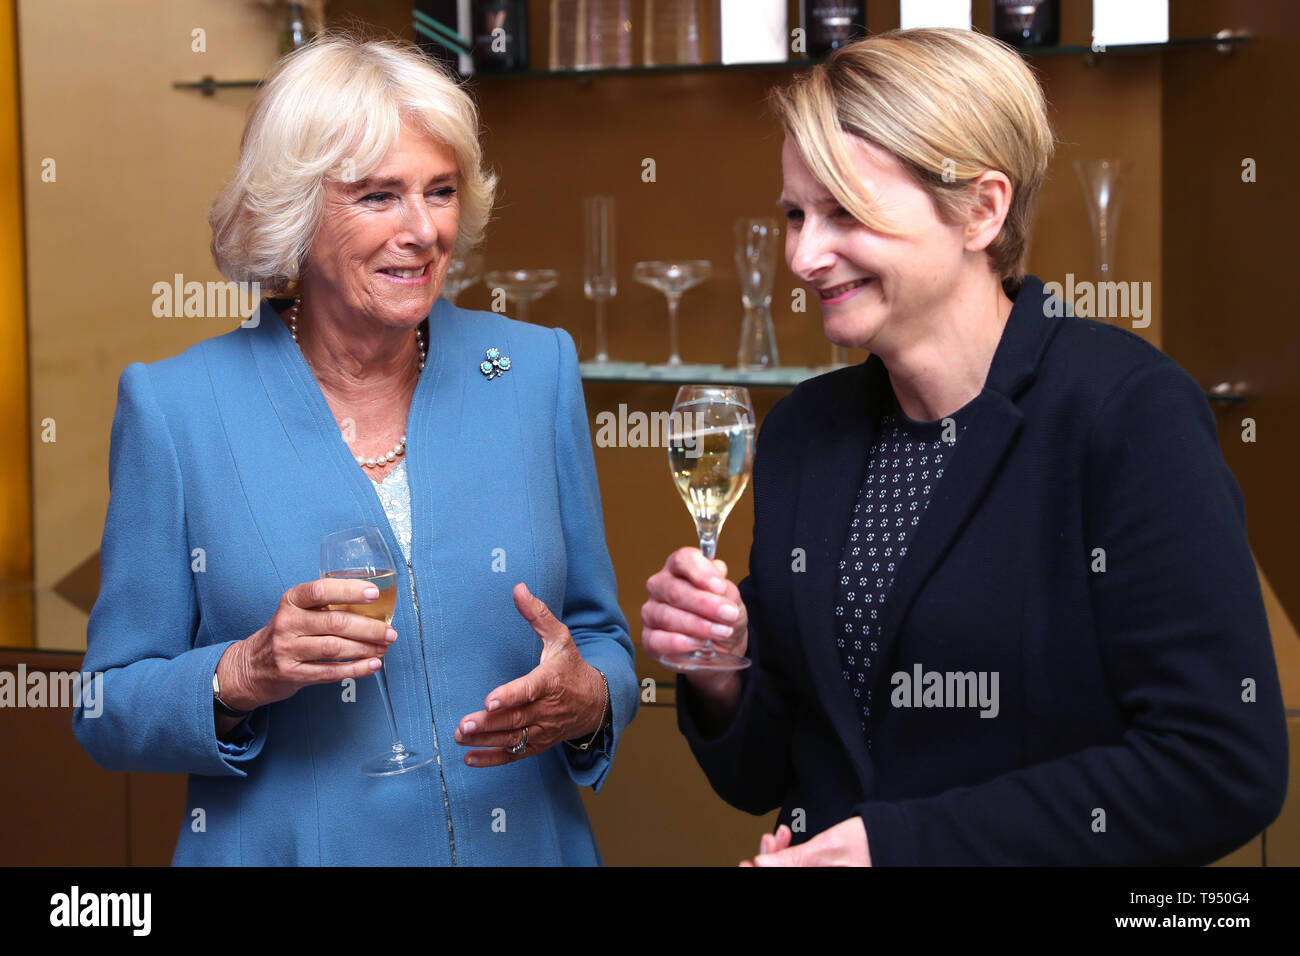 La duchessa di Cornovaglia, Presidente del vino GB, parla con il CEO di Tamara Roberts durante una visita a premiati Ridgeview Wine Estate, a conduzione familiare con vino frizzante business in comune Ditchling, East Sussex. Foto Stock